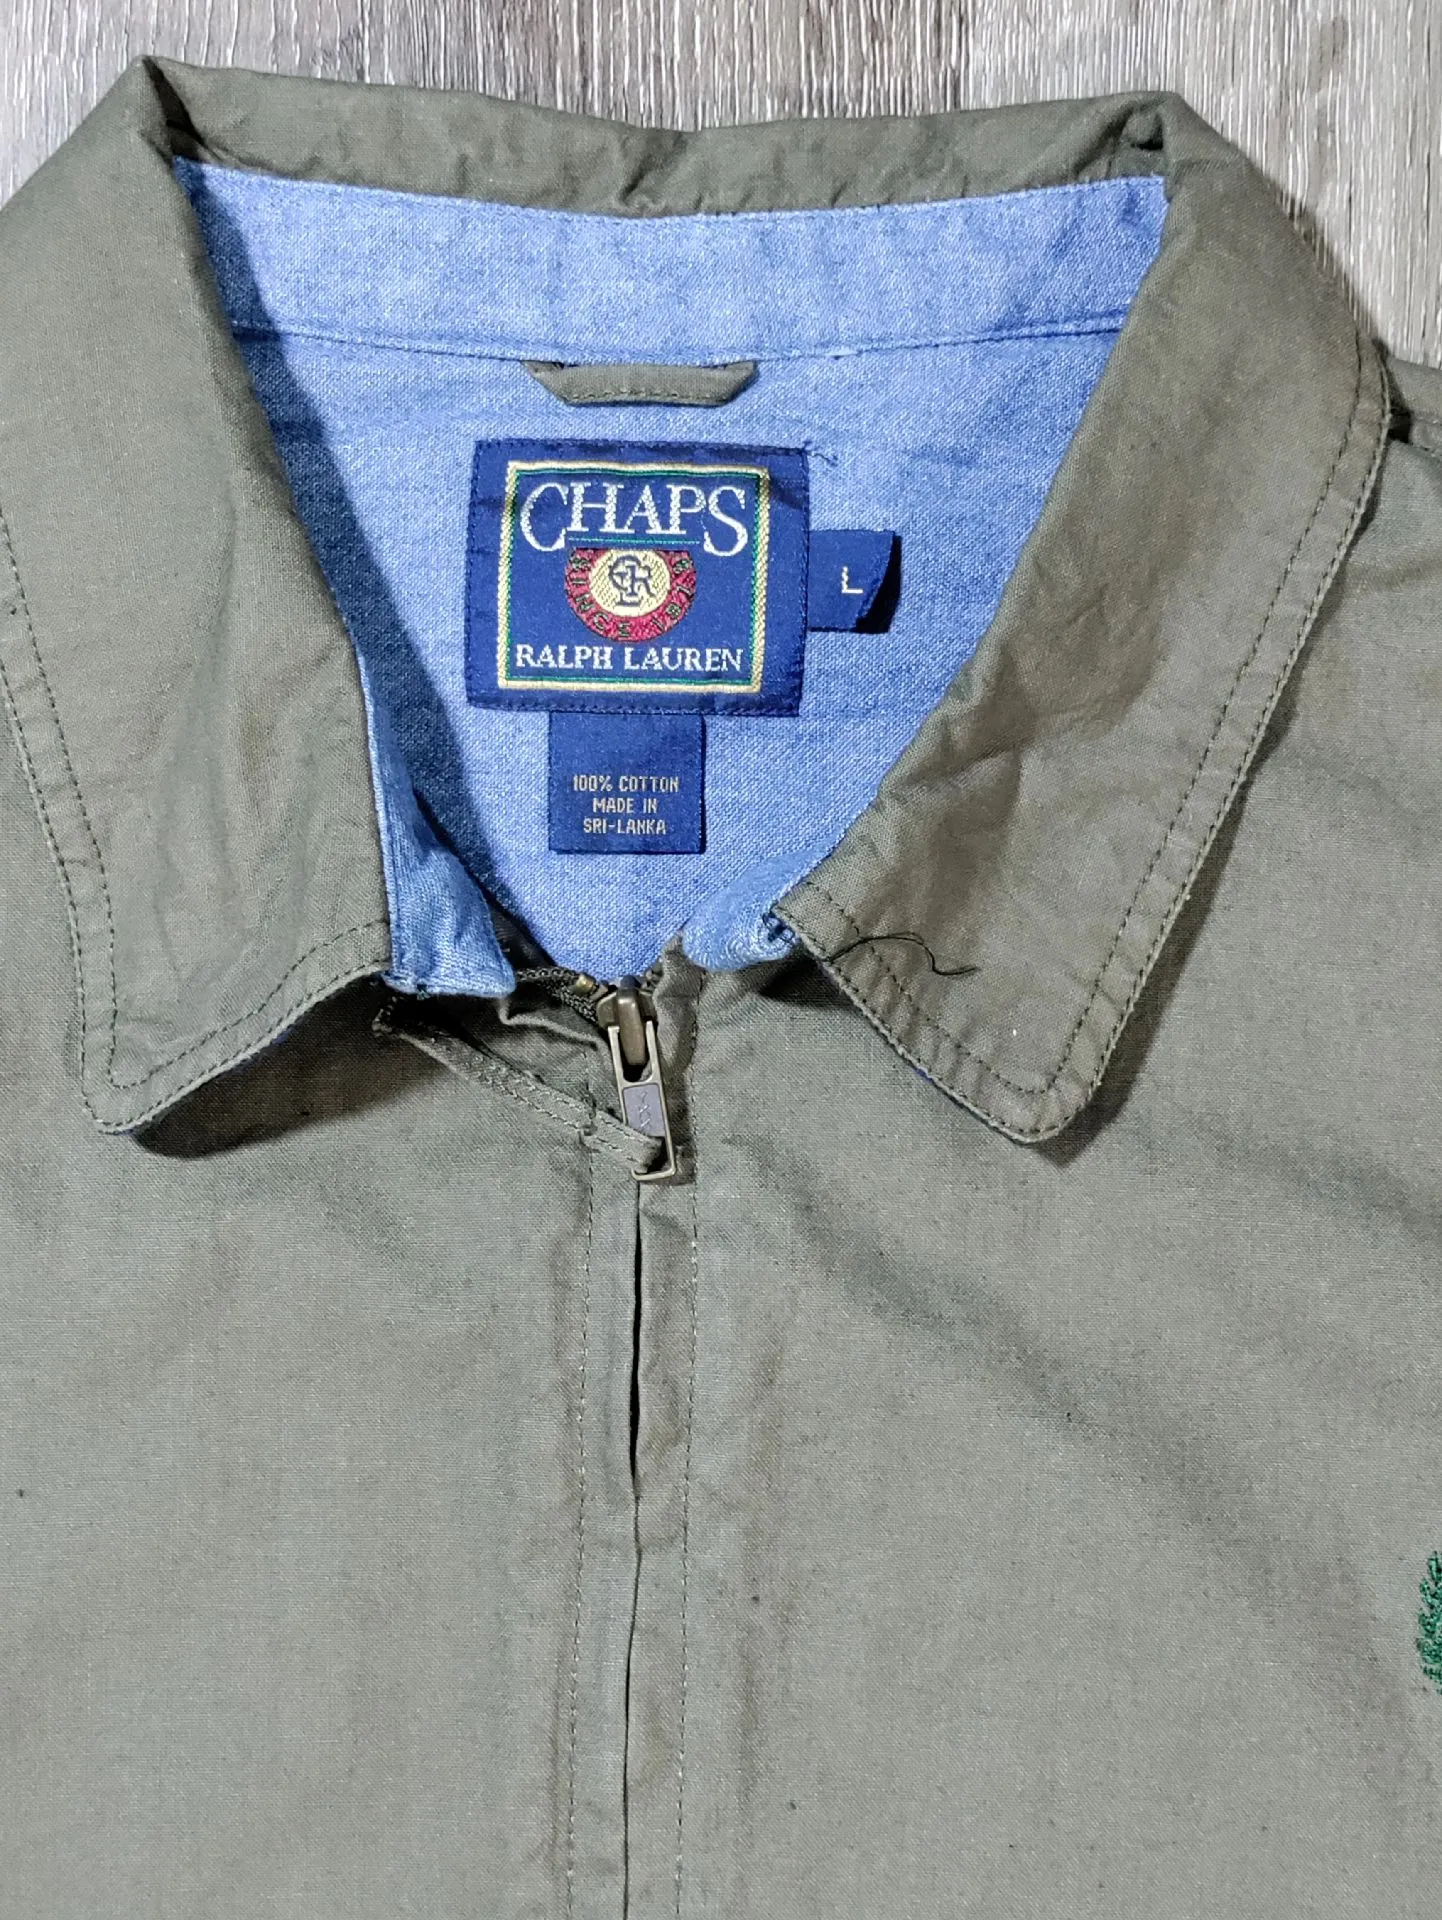 Vintage Chaps Ralph Lauren Light Harrington Jacket Size Large